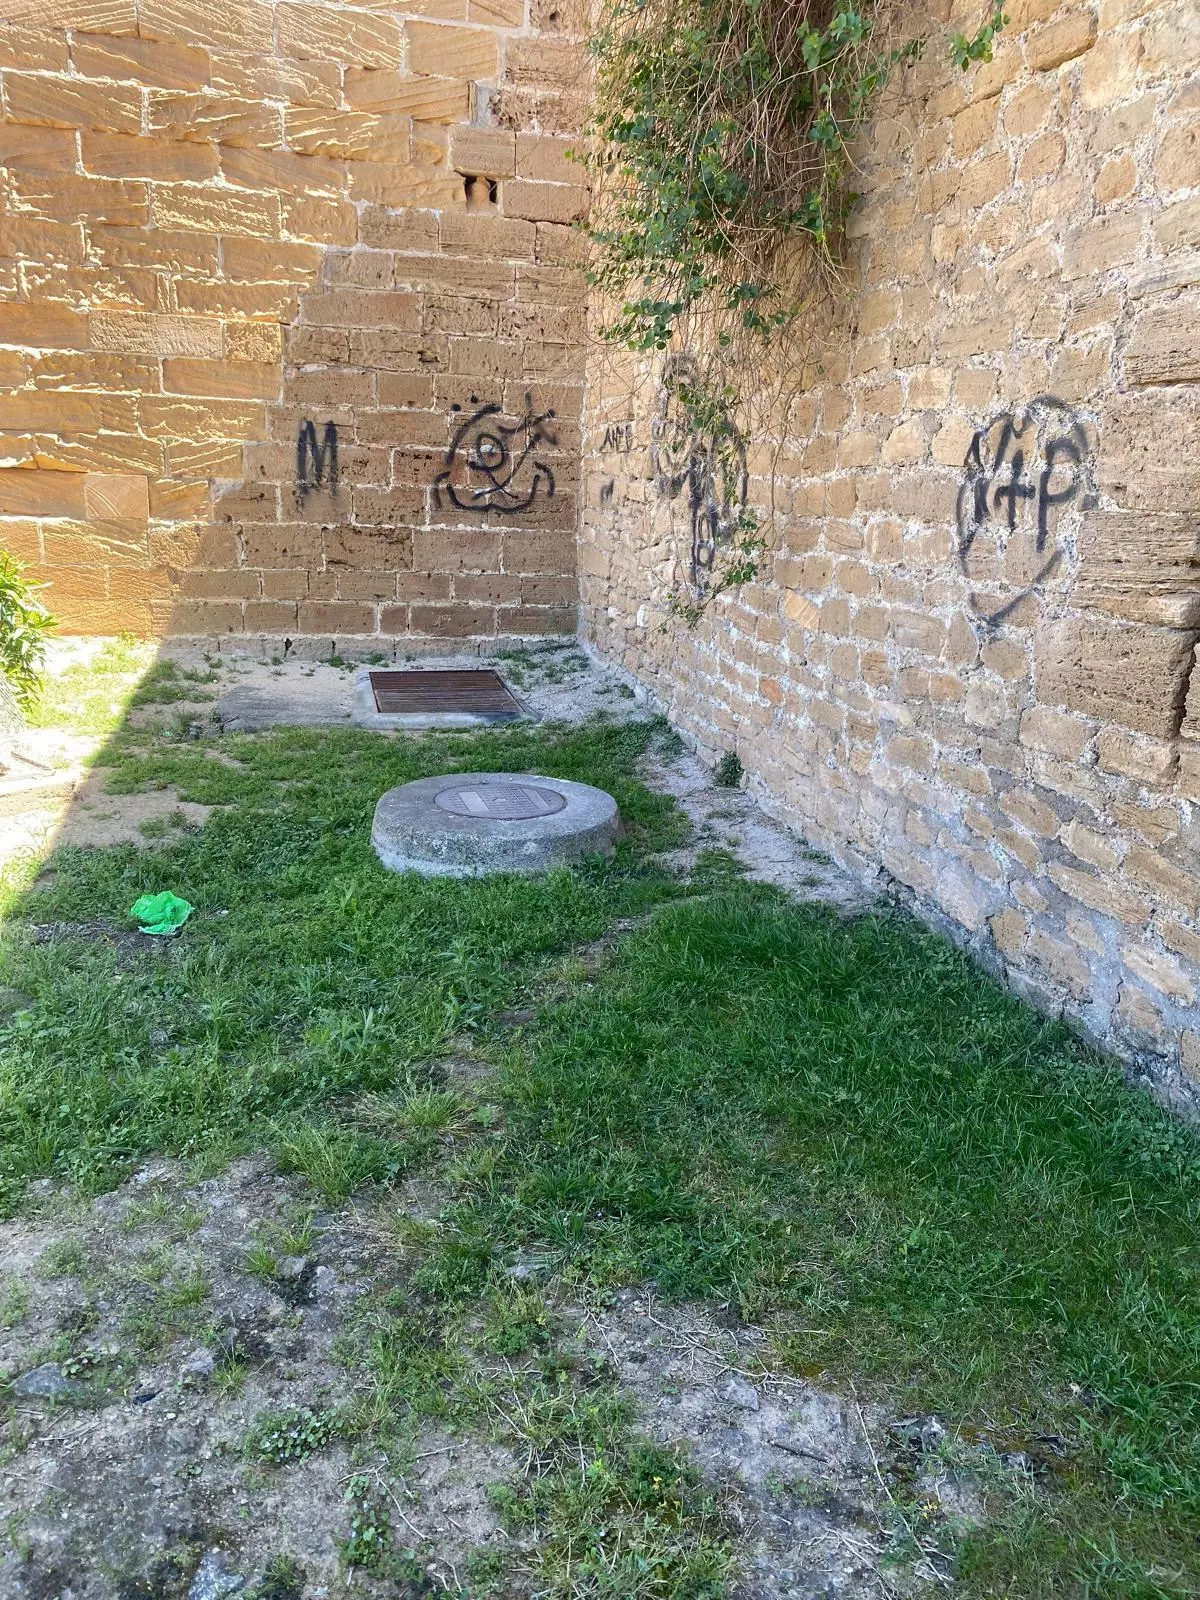 Pintadas vandálicas deslucen las murallas de Alcúdia desde hace meses